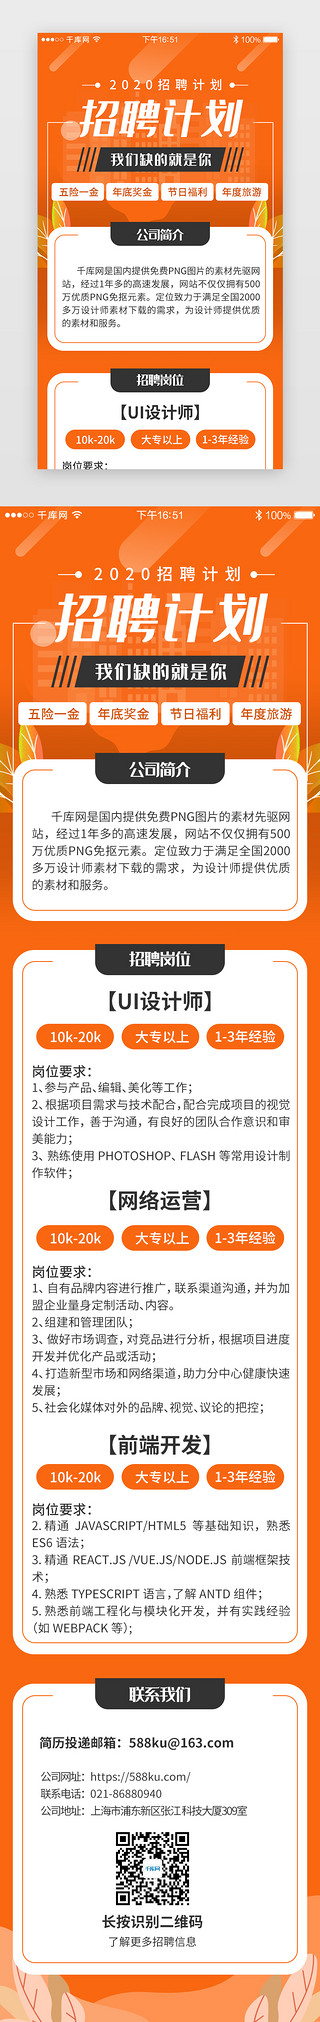 微信公众号封面招聘UI设计素材_橙色系app招聘求职H5